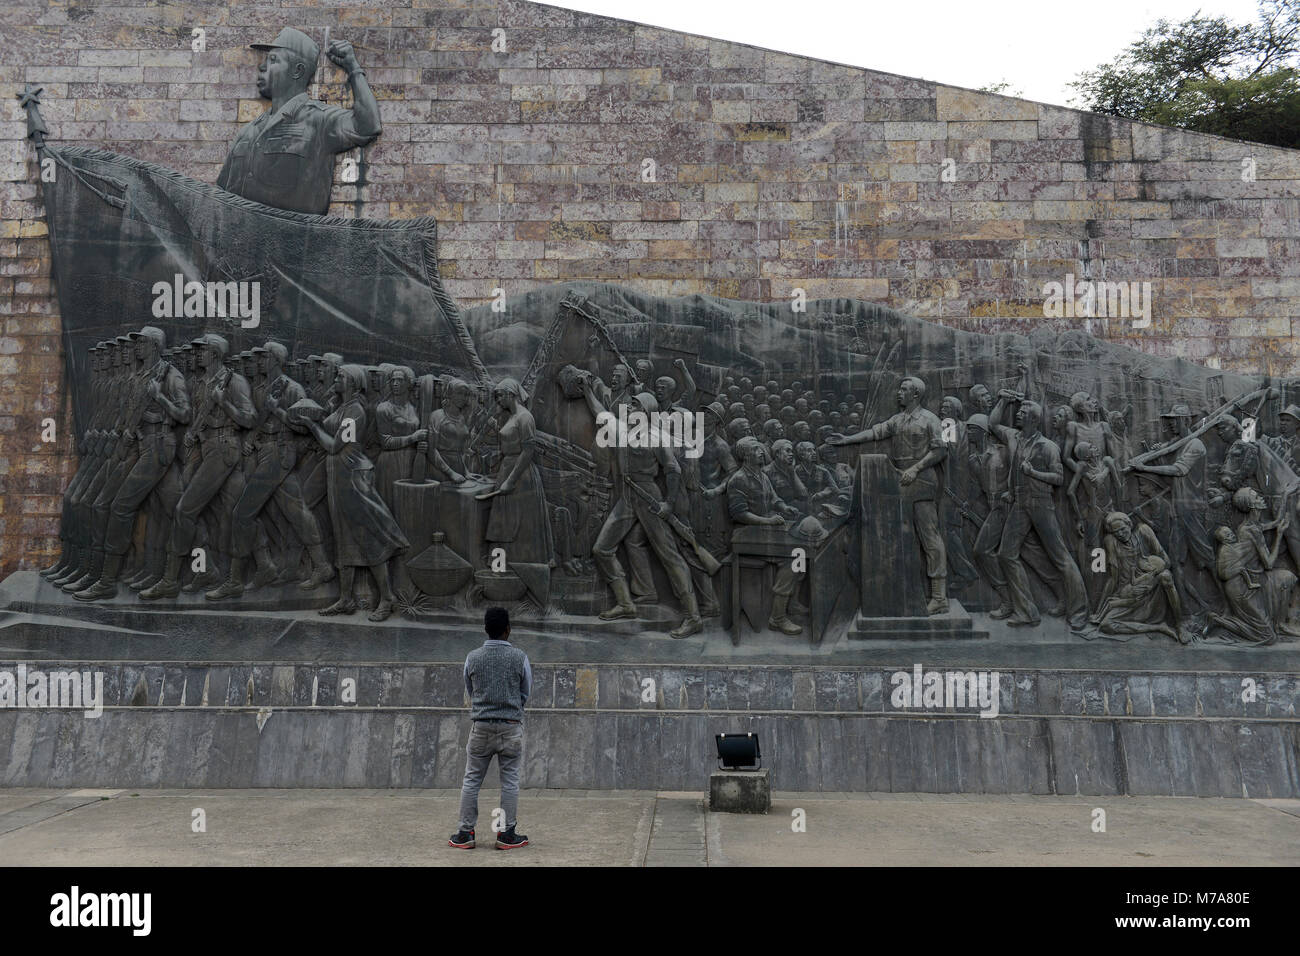 Äthiopien, Addis Abeba, die Tiglachin Denkmal, auch als Derg Denkmal am Churchill Avenue bekannt, Derg war das kommunistische Regime unter dem Diktator Mengistu Haile Mariam, ist ein Denkmal für äthiopische und kubanische Soldaten in der Ogaden-krieg zwischen Somalia und Äthiopien, am 12. September 1984 eingeweiht, die Statuen wurde von Nordkorea gespendet, und wurde von der Mansudae Art Studio hergestellt, Wand Relief mit Arbeiter, Bauern und Soldaten, angeführt von dem Diktator/AETHIOPIEN, Addis Abeba, Monument aus der kommunistischen Derg Zeit Stockfoto